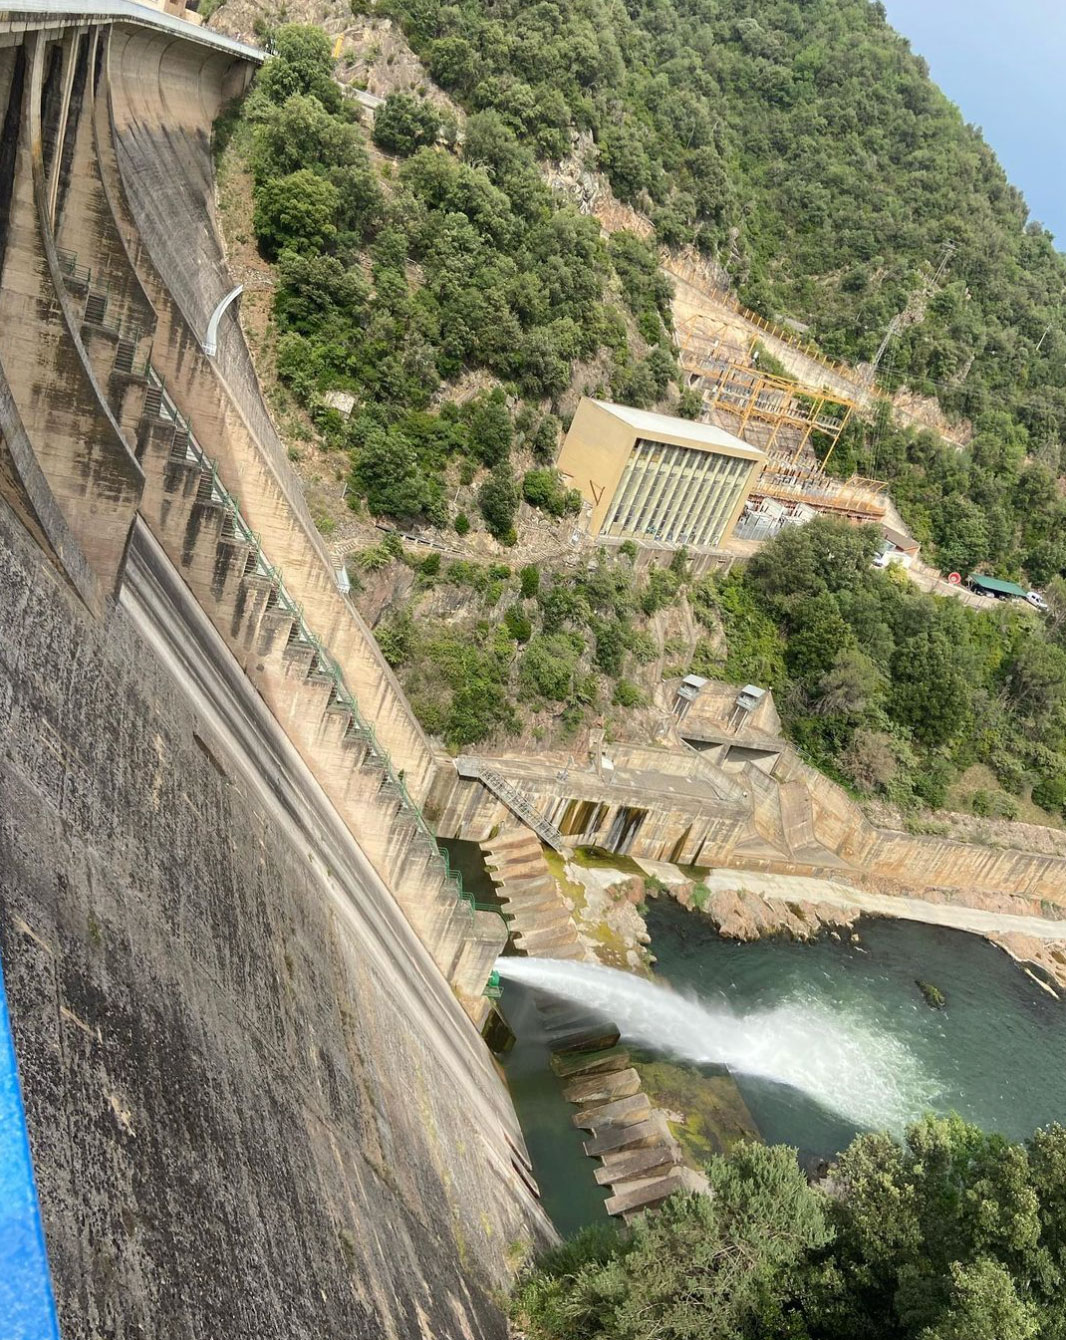 Каталонія переживає найсильнішу посуху в історії